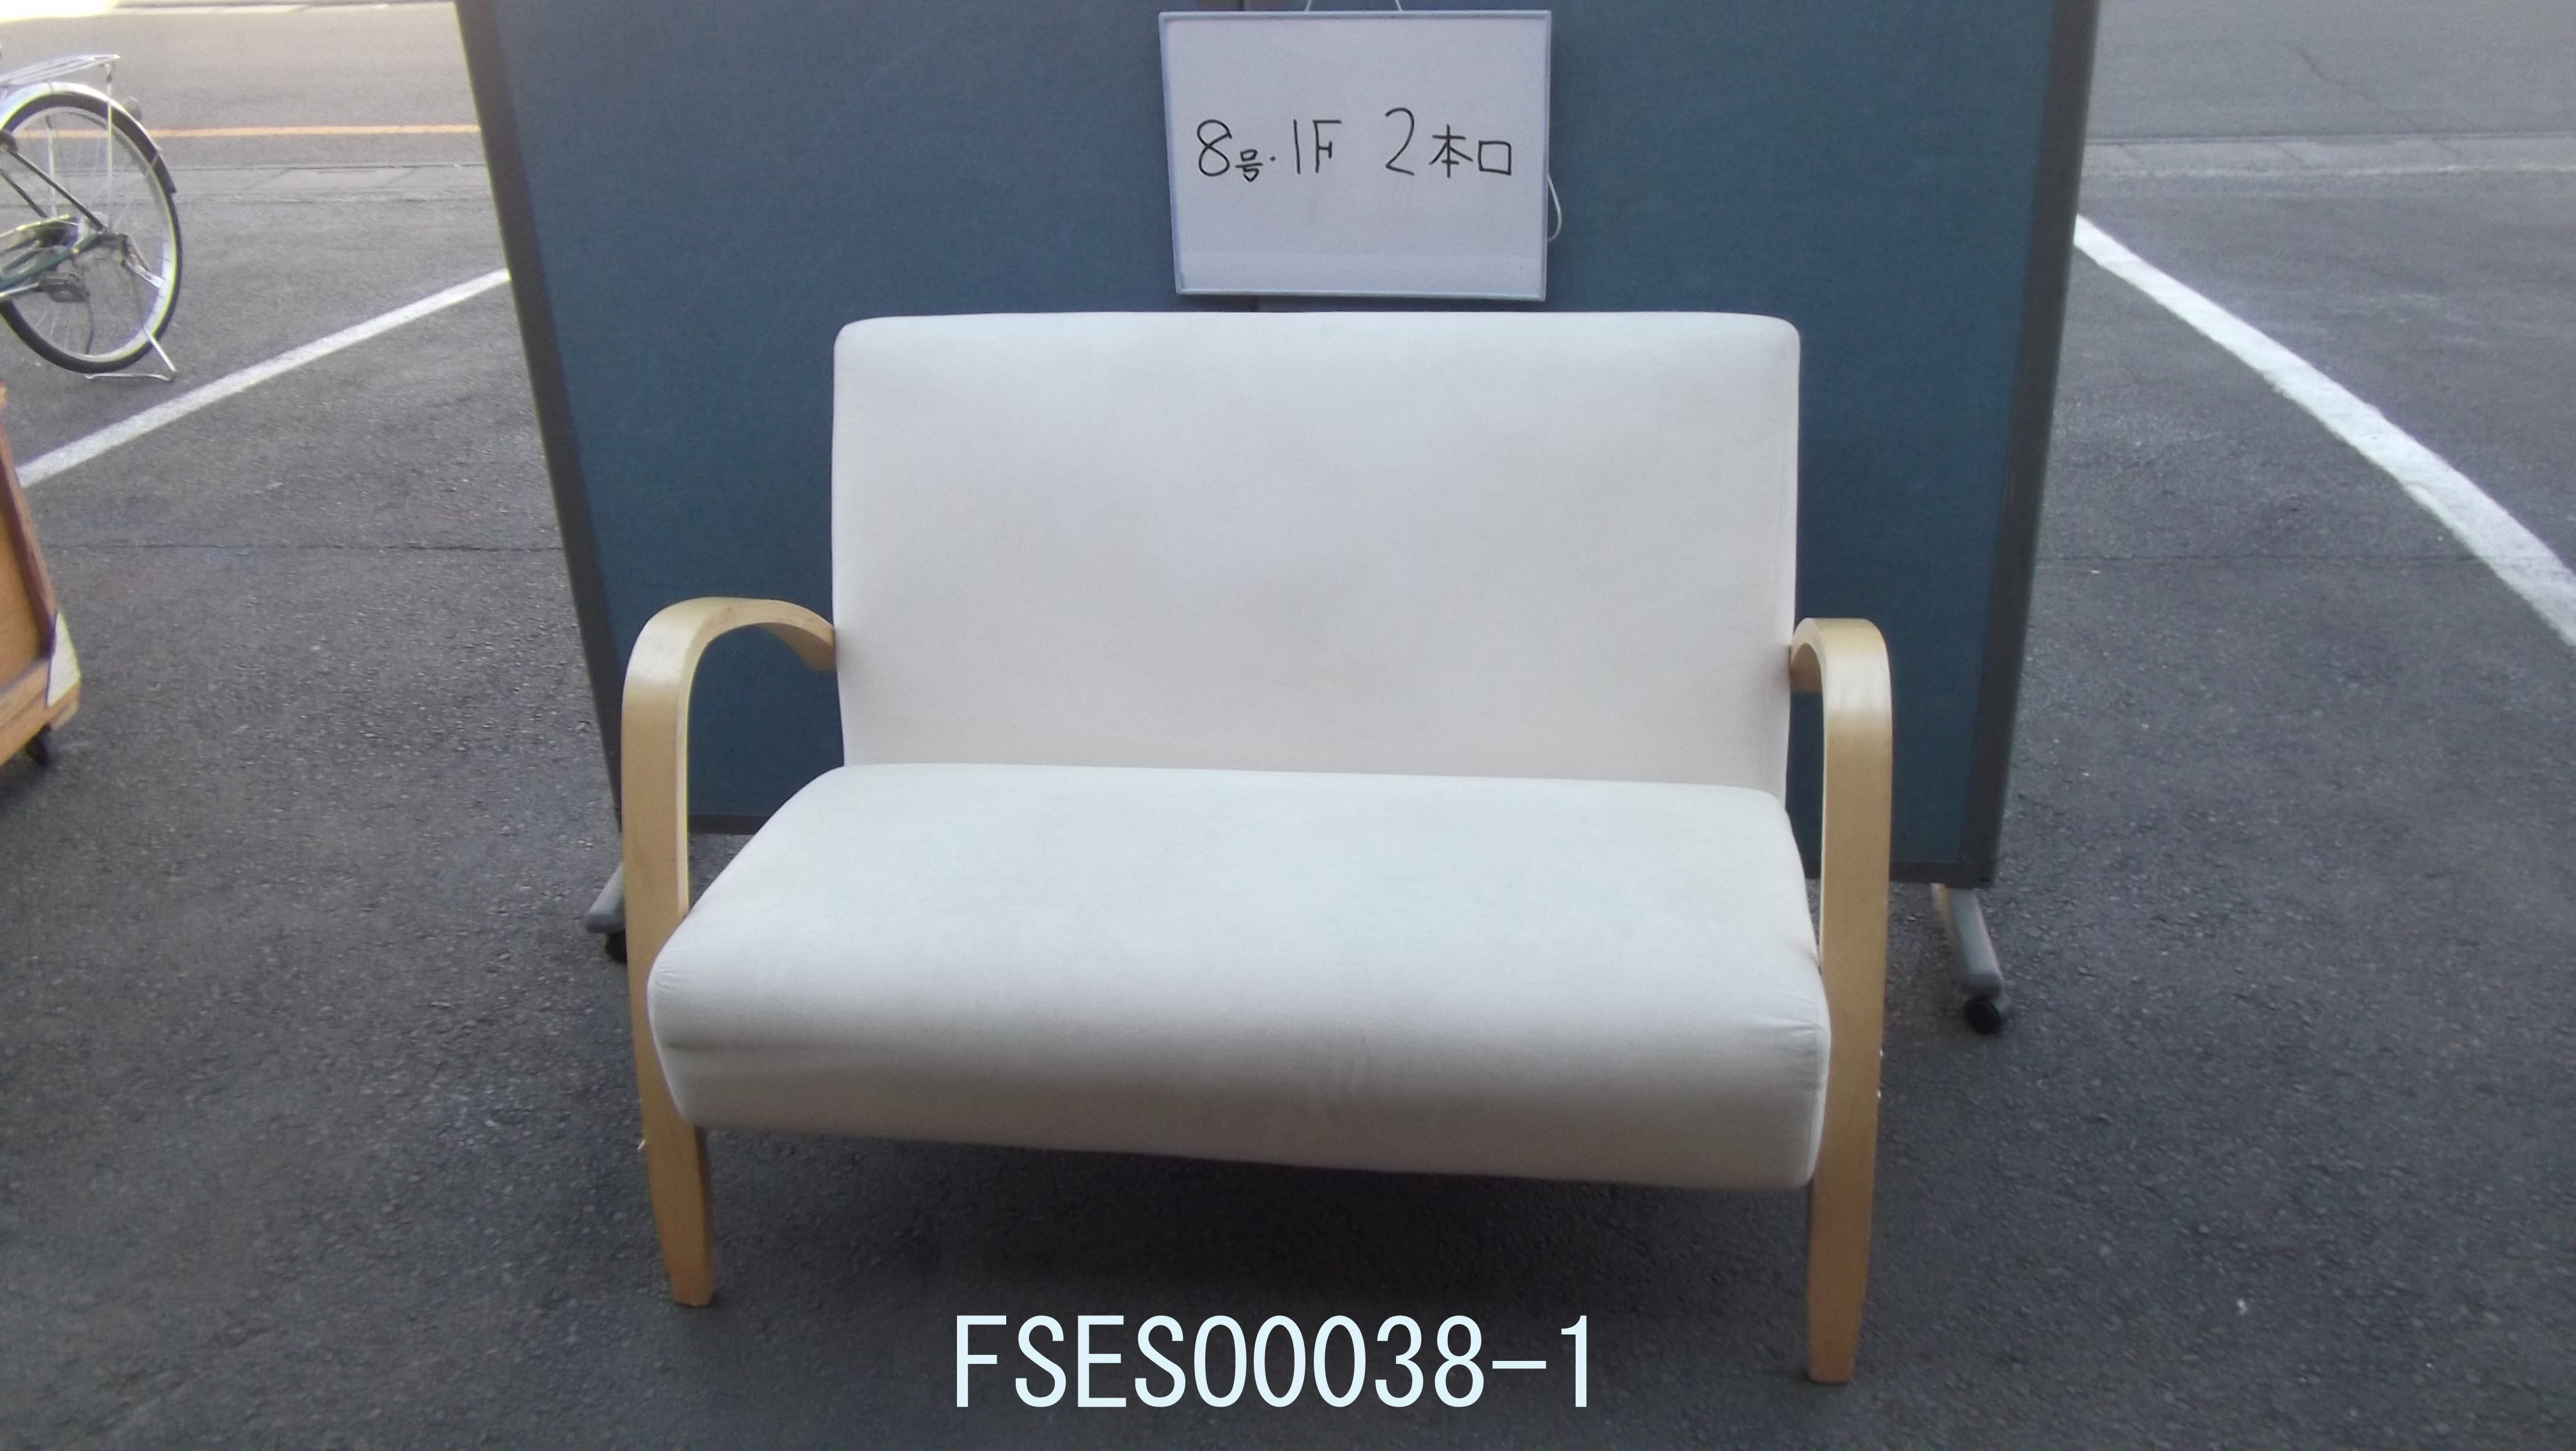 FSESO0038-1